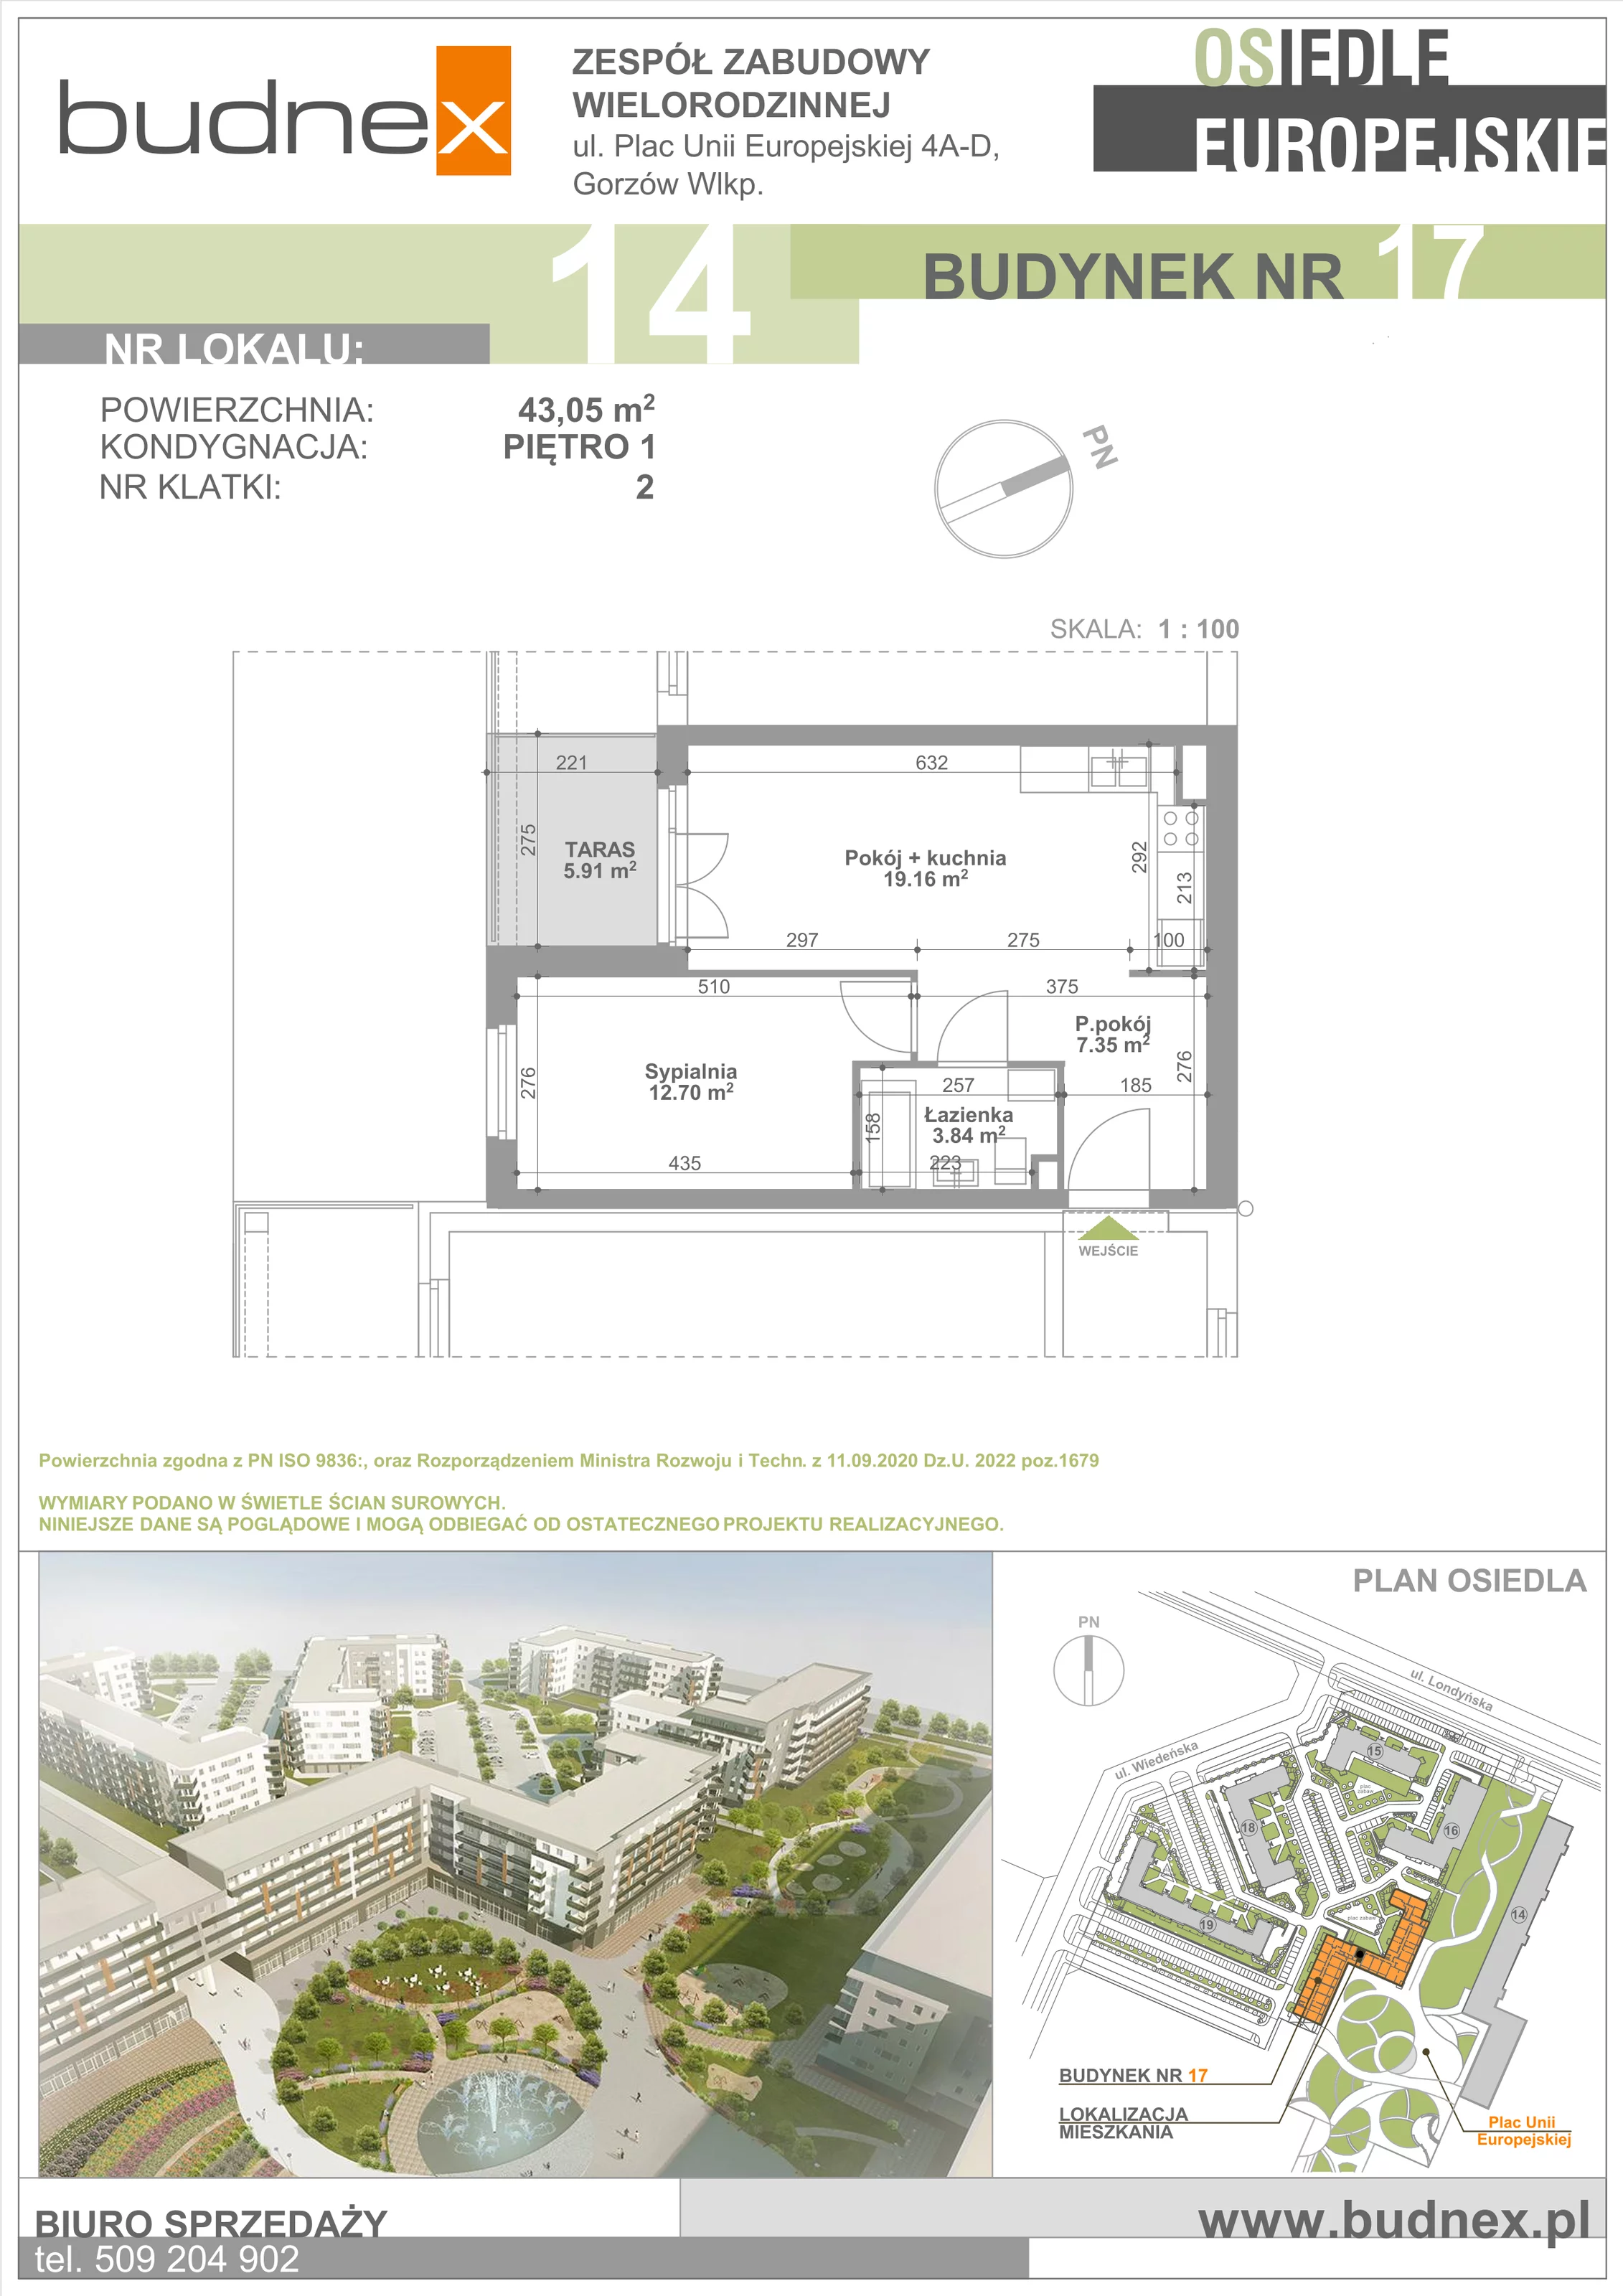 Mieszkanie 46,93 m², piętro 1, oferta nr 2/M14, Osiedle Europejskie - Budynek 17, Gorzów Wielkopolski, Plac Unii Europejskiej 4A-D